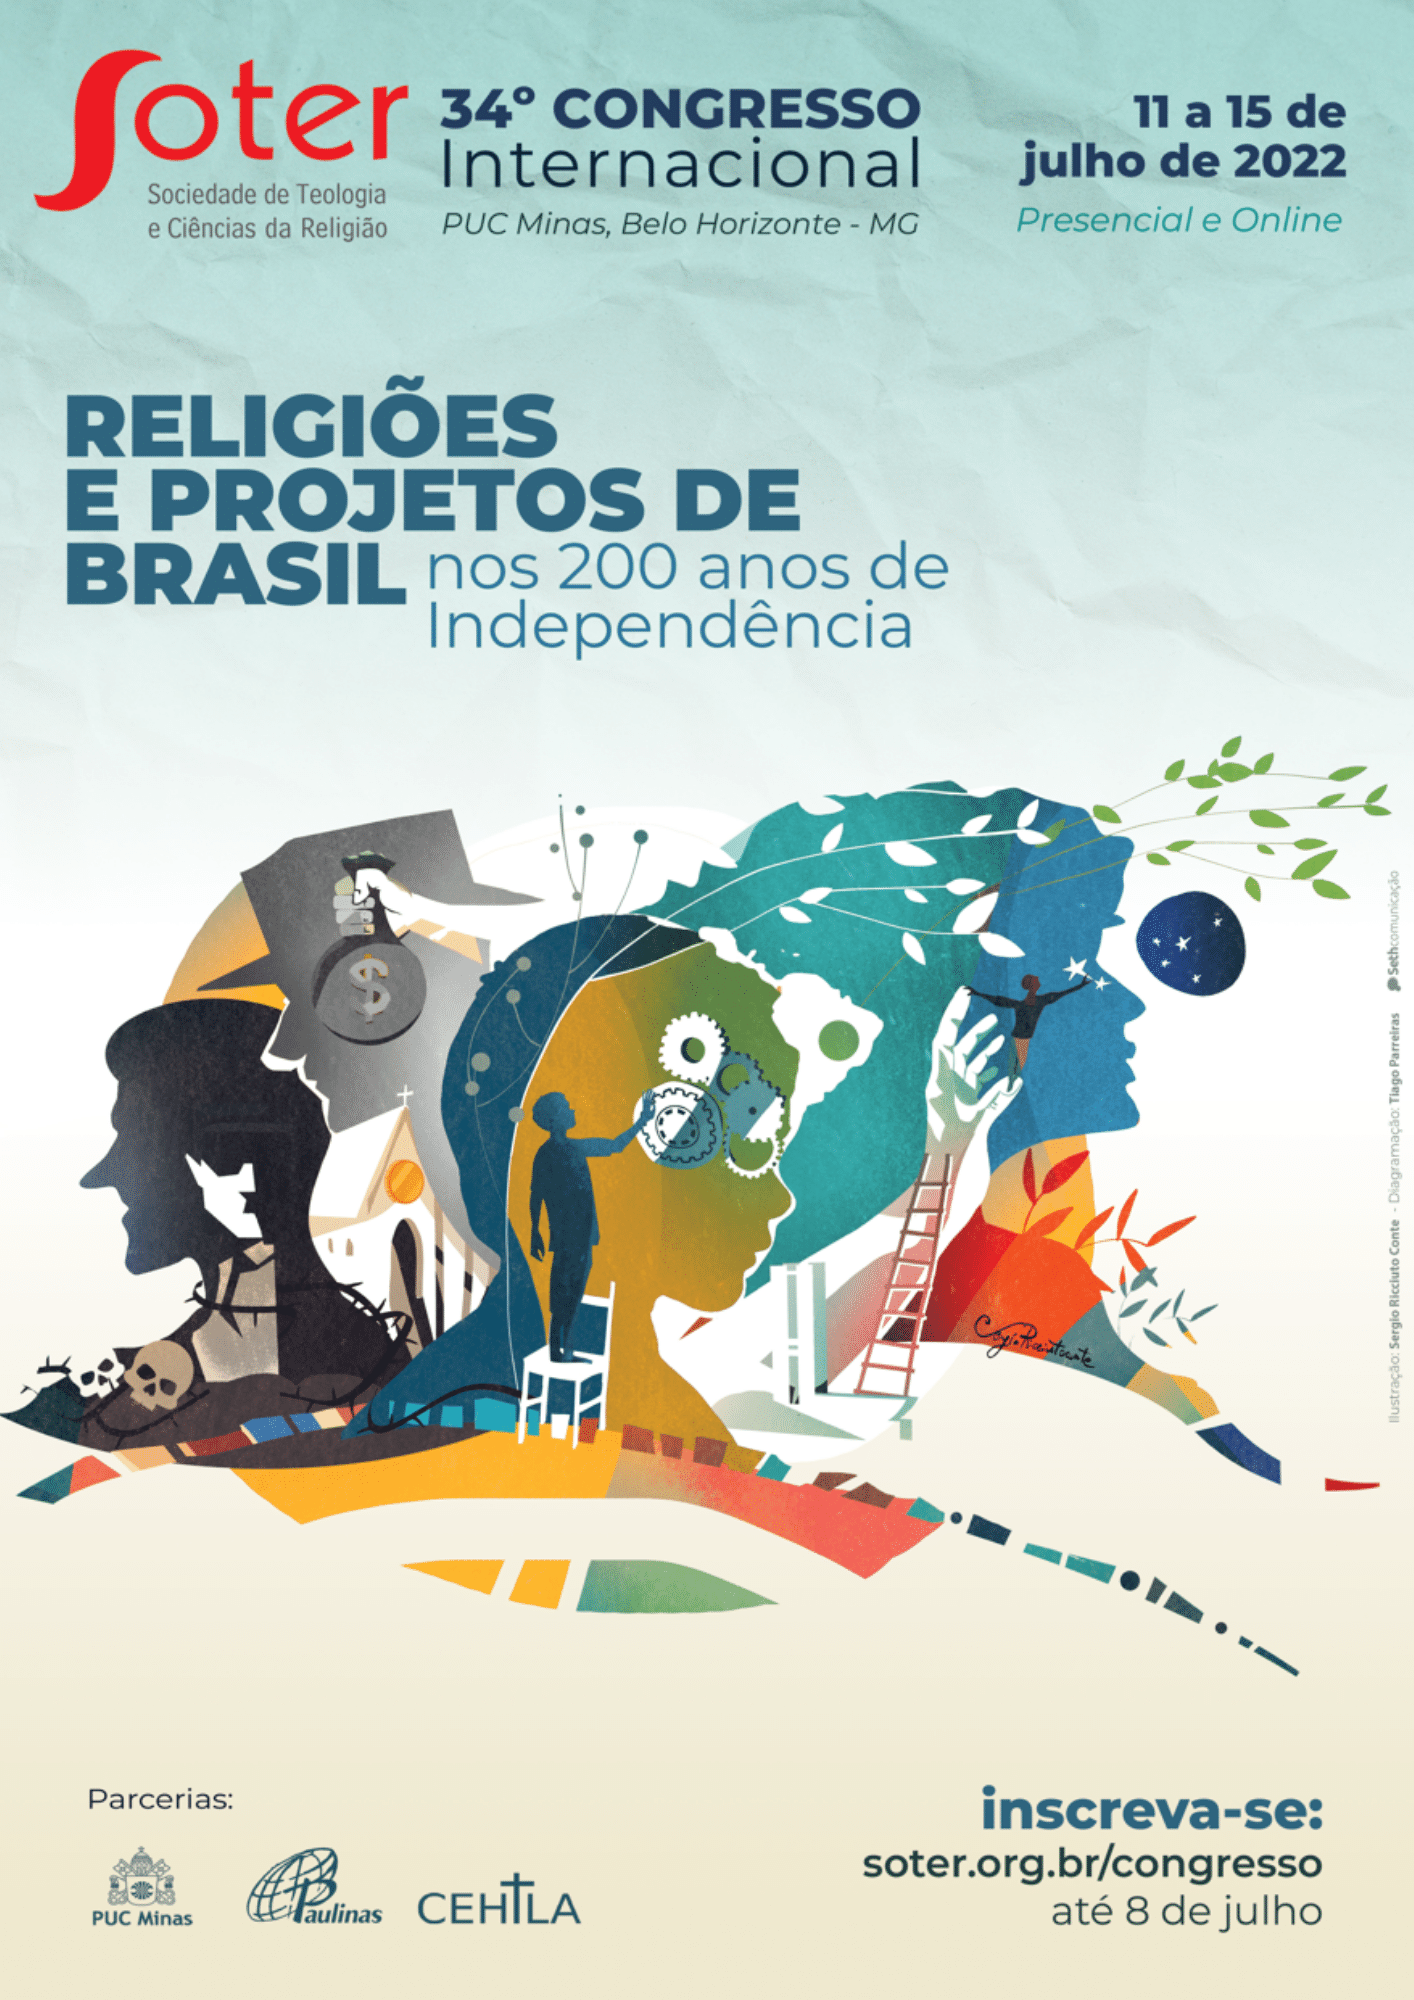 Igreja Adventista no Brasil Realiza 10 Dias de Oração no Metaverso